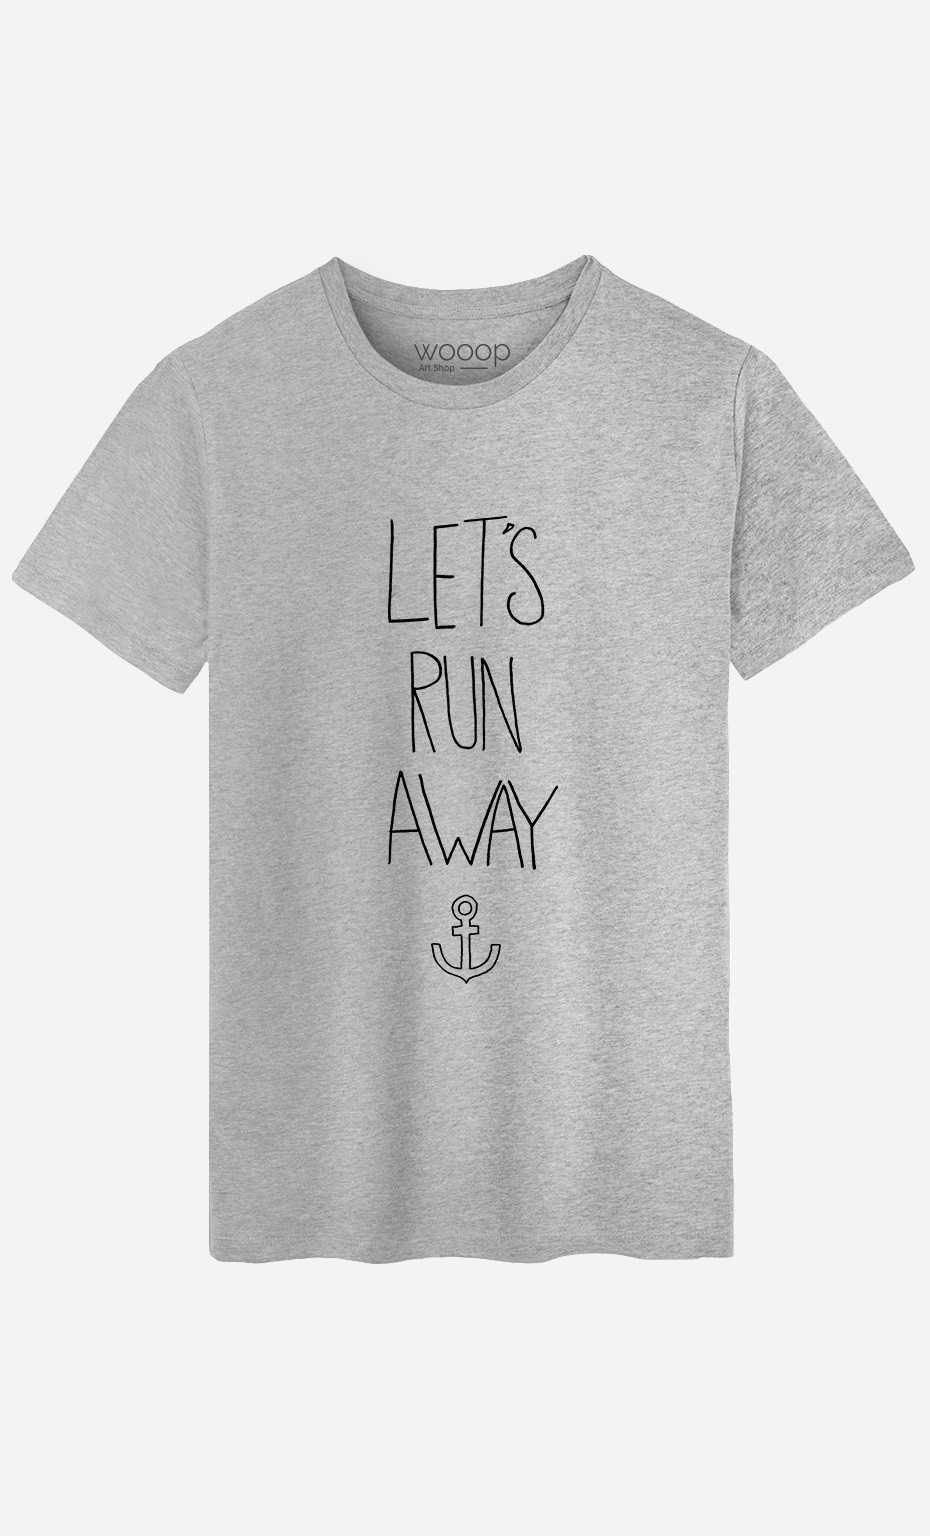 T-Shirt Let's Run Away